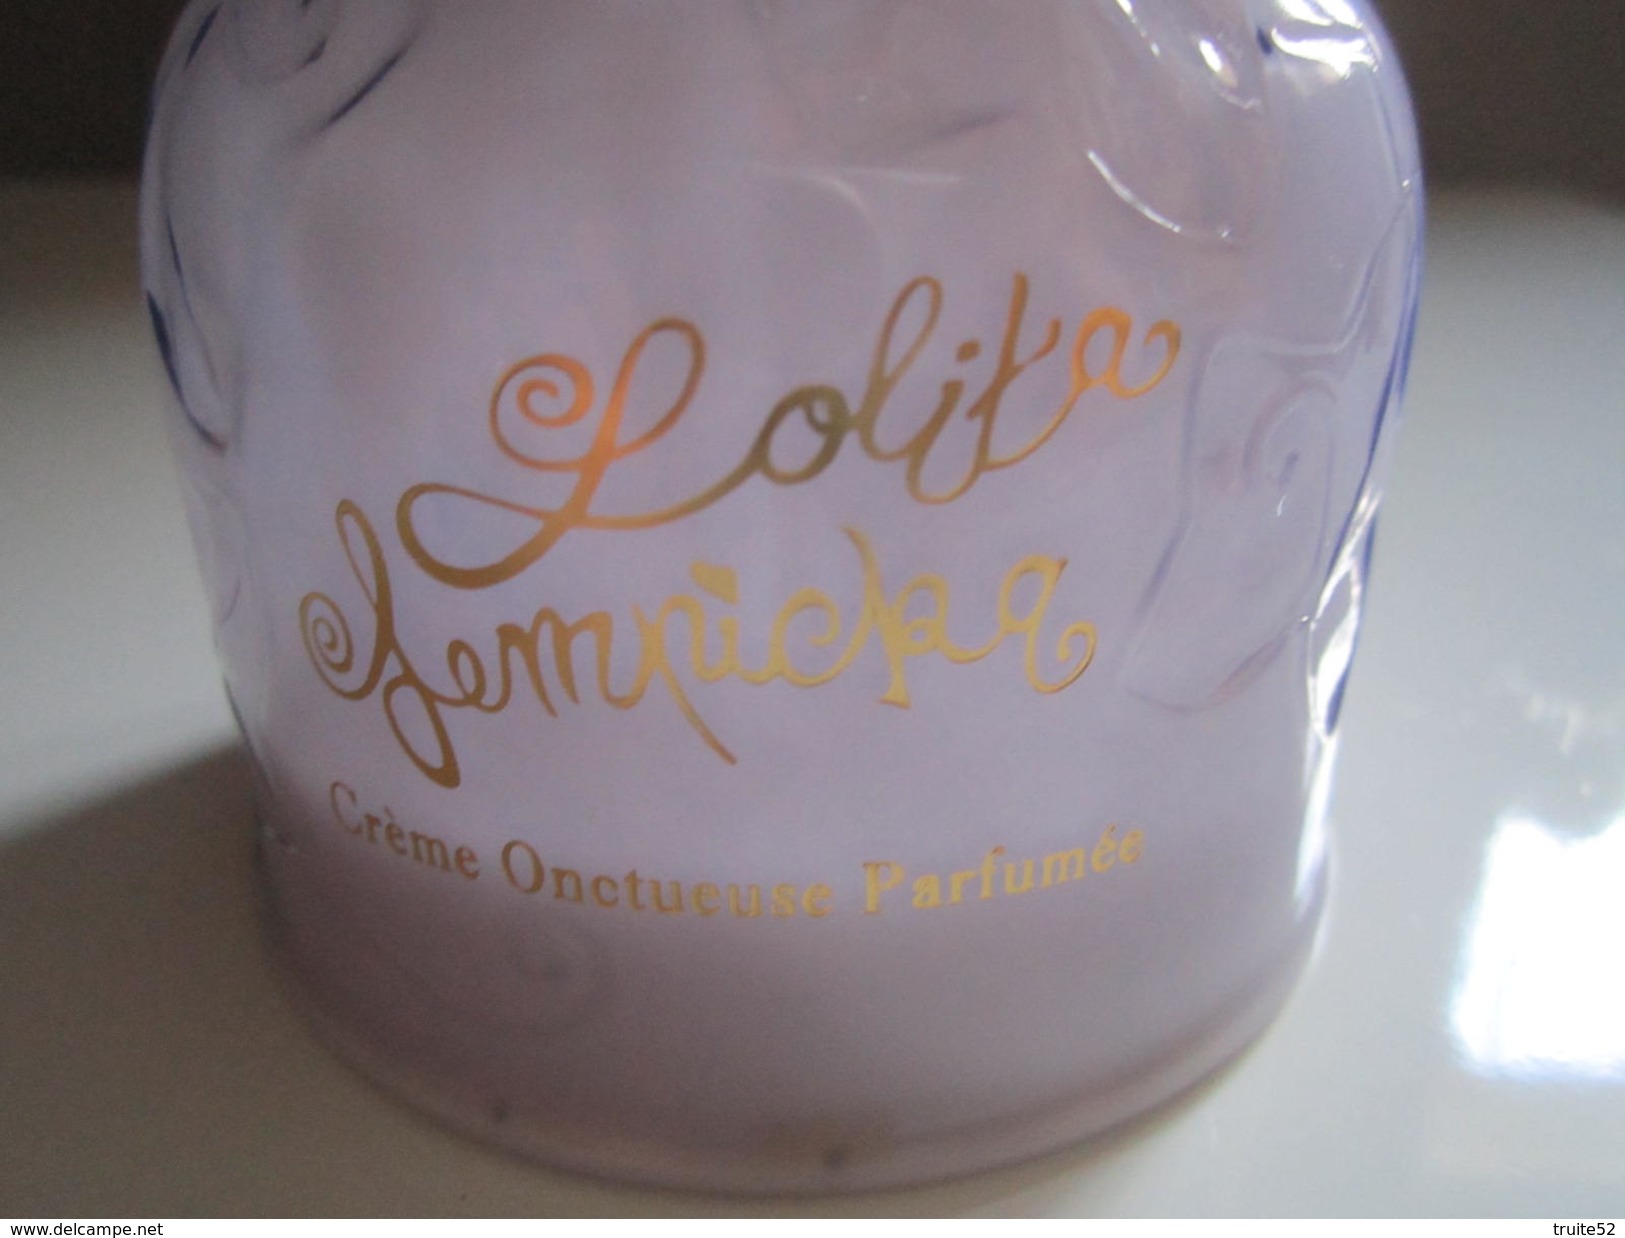 Le Premier Parfum Crème Onctueuse PARFUMEE 300 Ml LOLITA LEMPICKA - Bottles (empty)